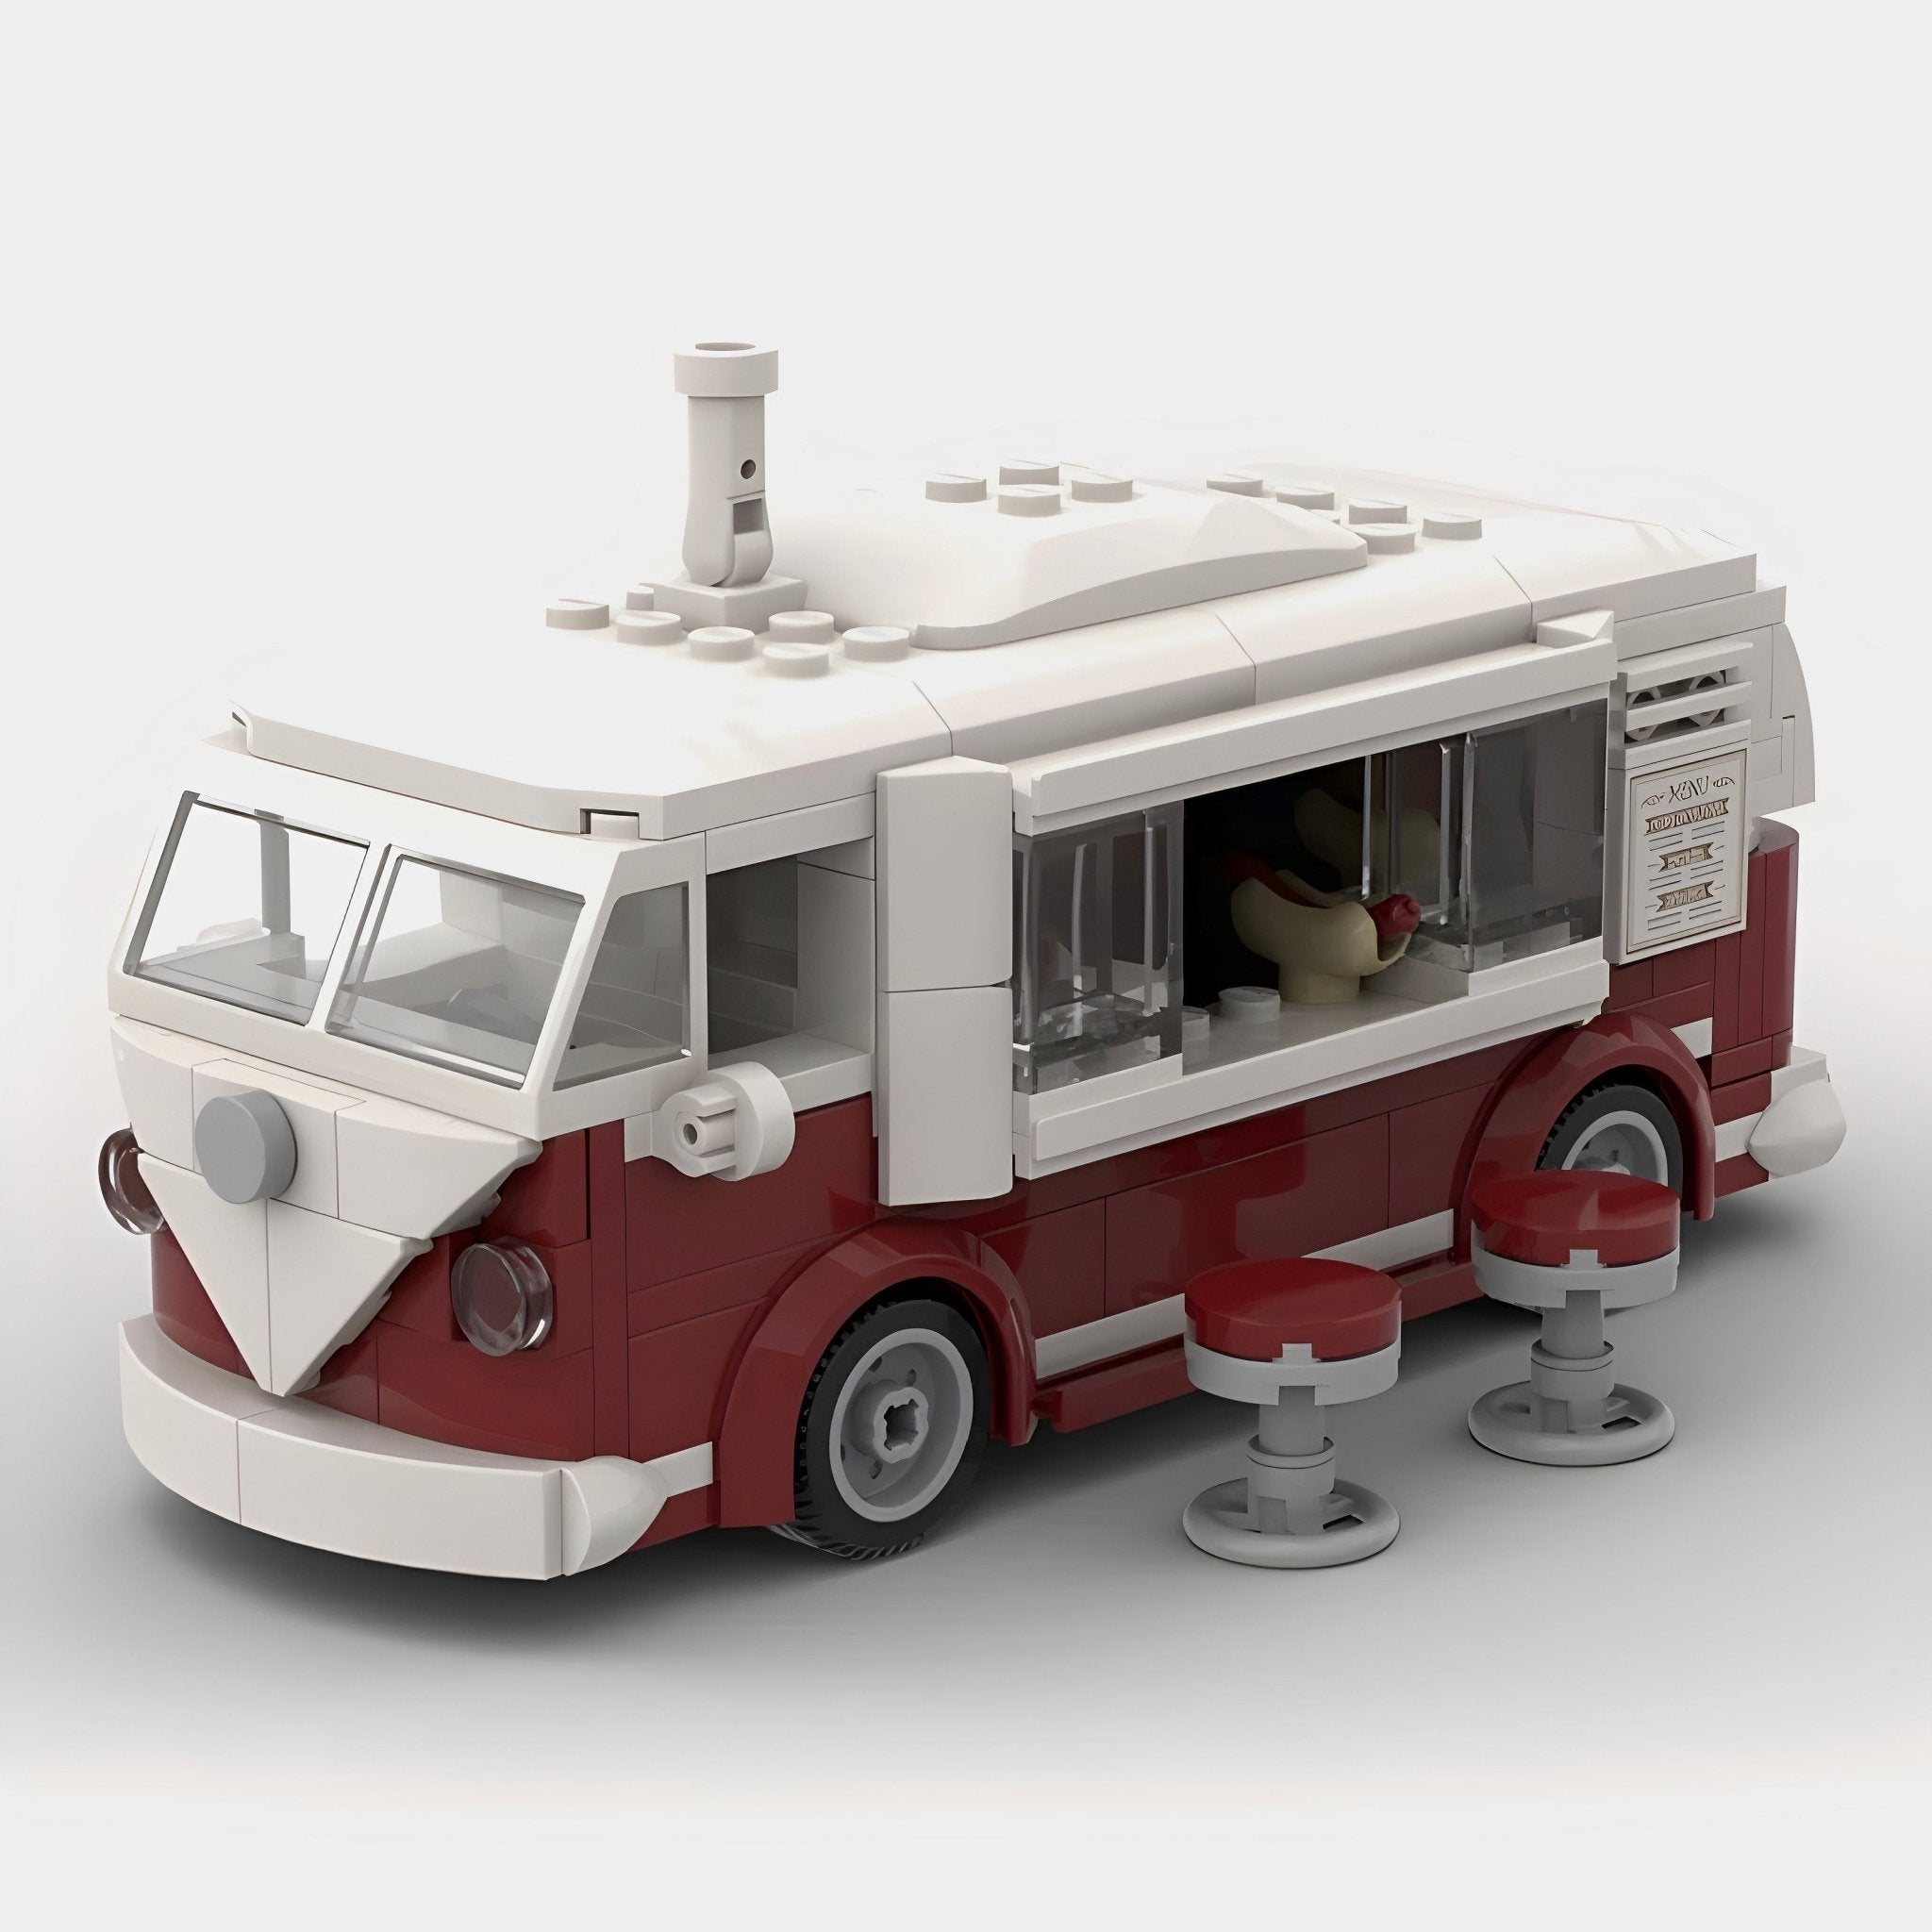 Volkswagen | Hot Dog truck